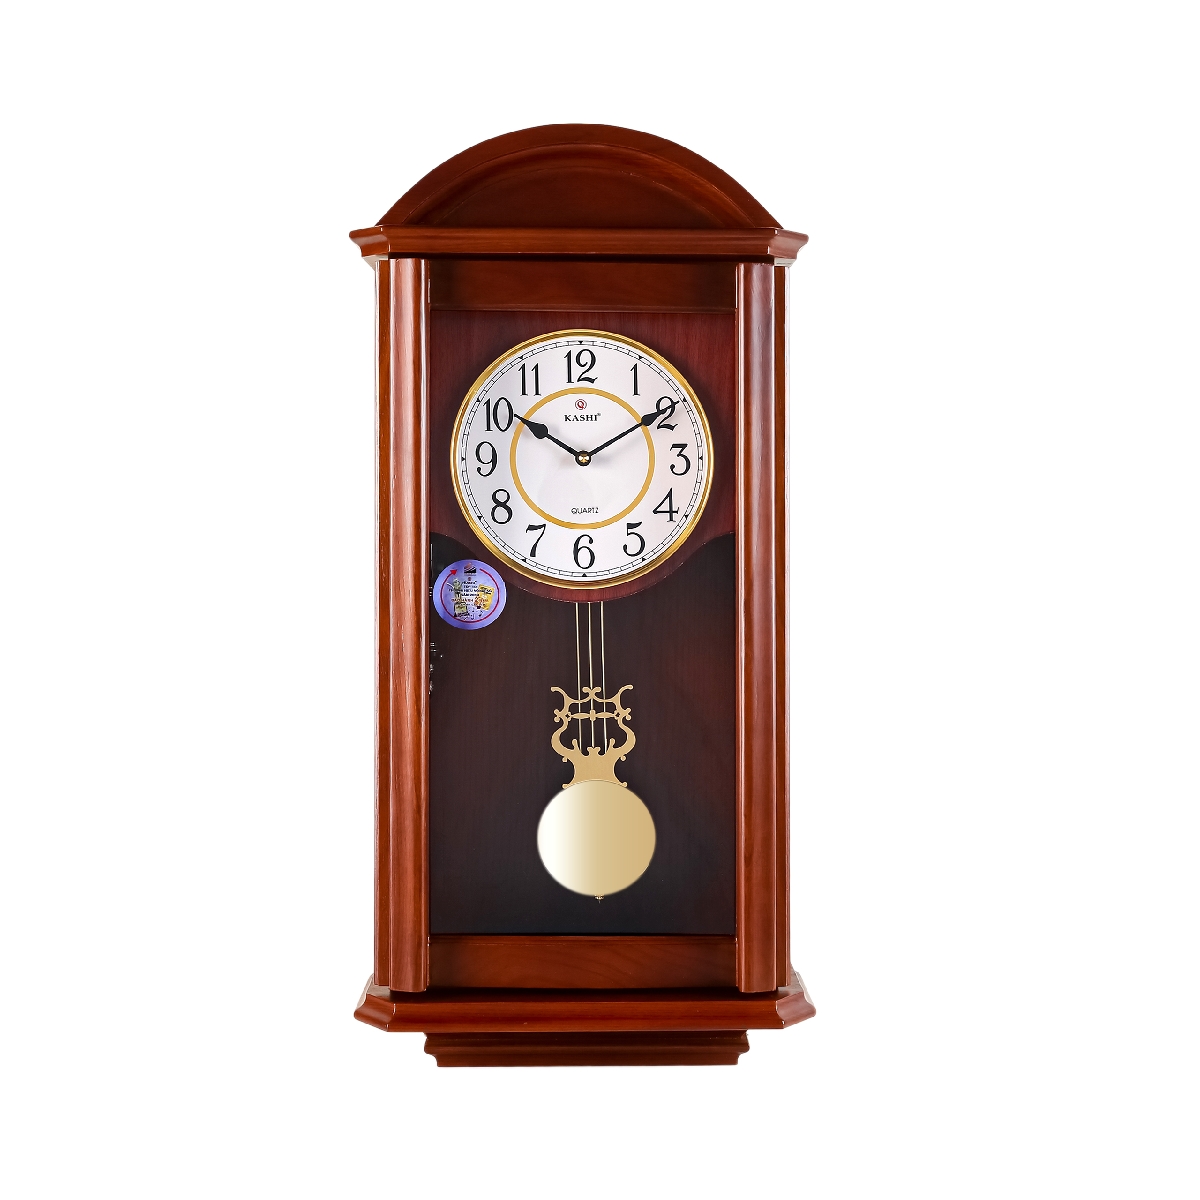 Đồng hồ treo tường quả lắc New HM672 Kashi Clock